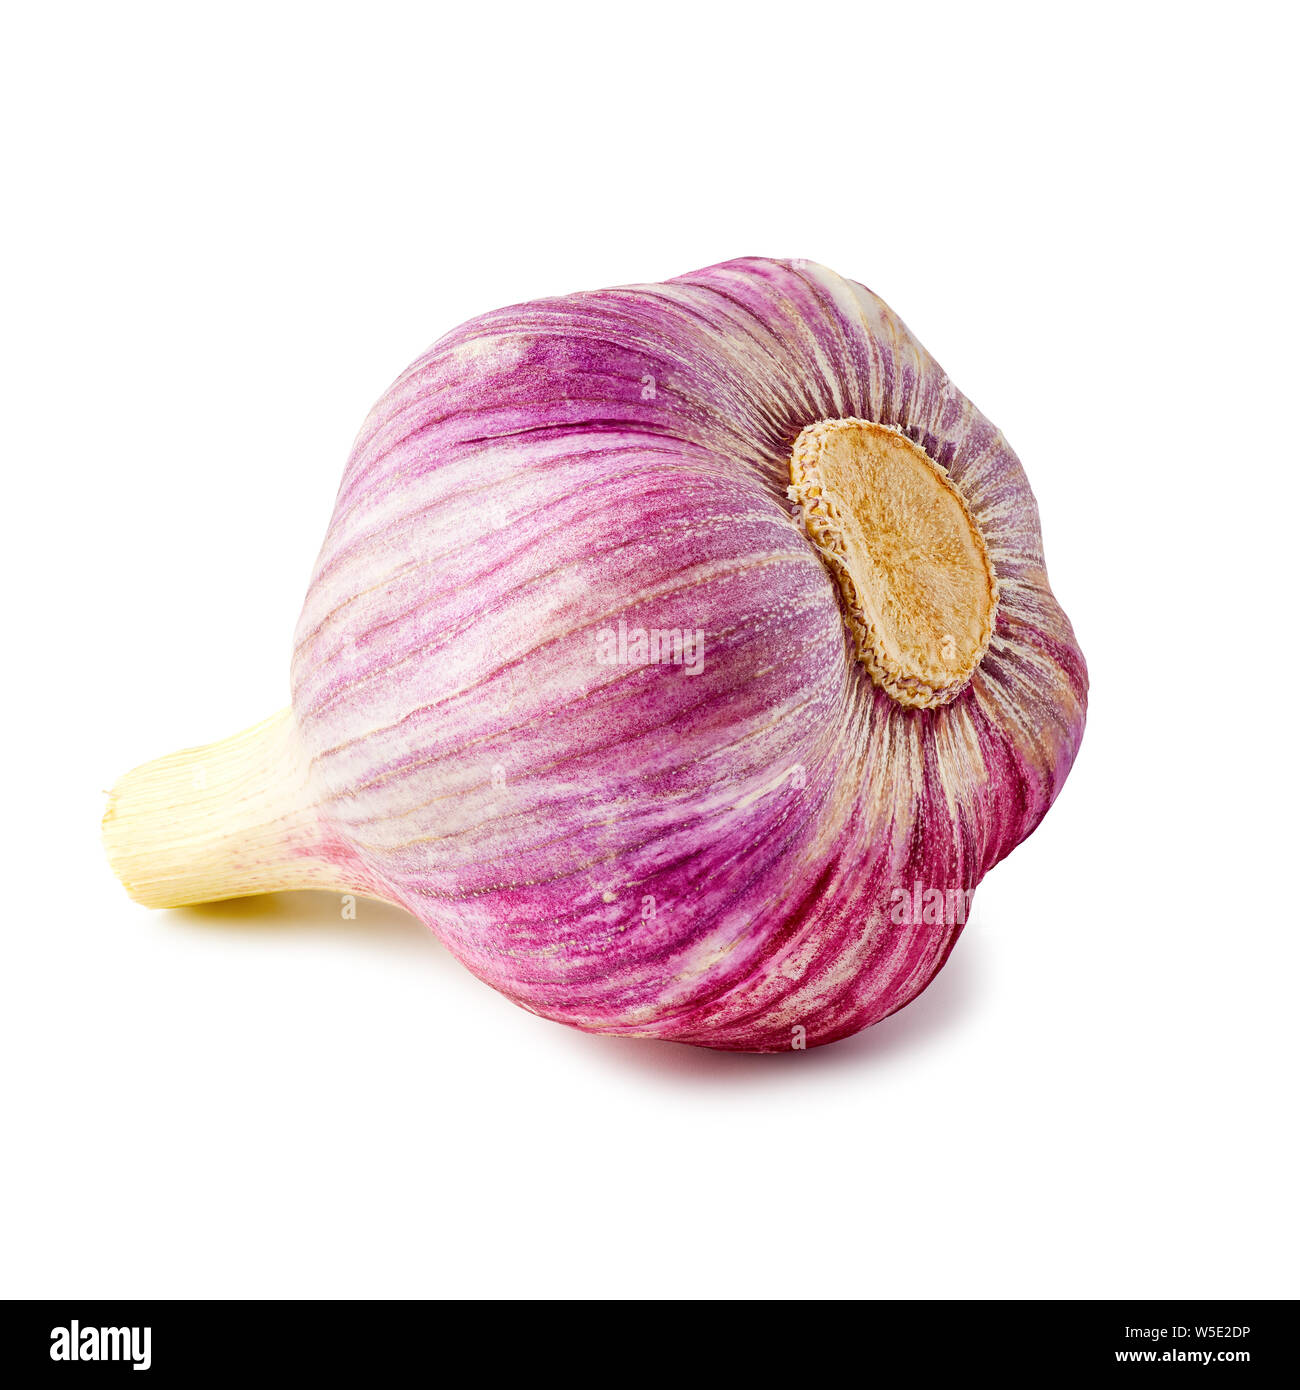 Violet bulb of fresh garlic on white Stock Photo